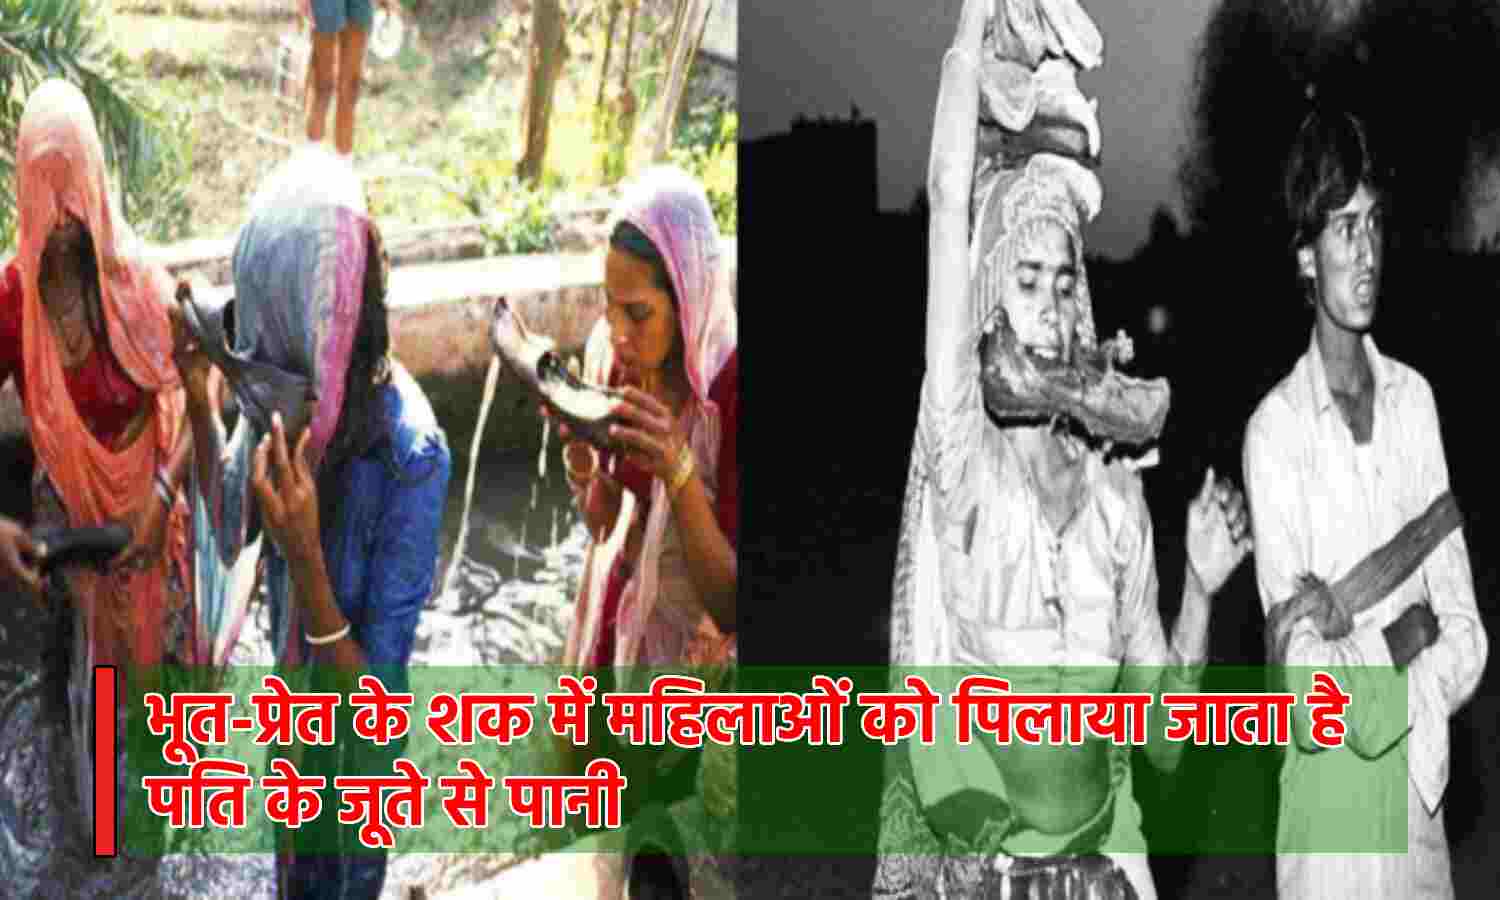 Rajasthan News : पति के जूते से पानी पीती है महिलाएं, भूत-प्रेत के नाम पर खेला जाता है अंधविश्वास का घिनौना खेल